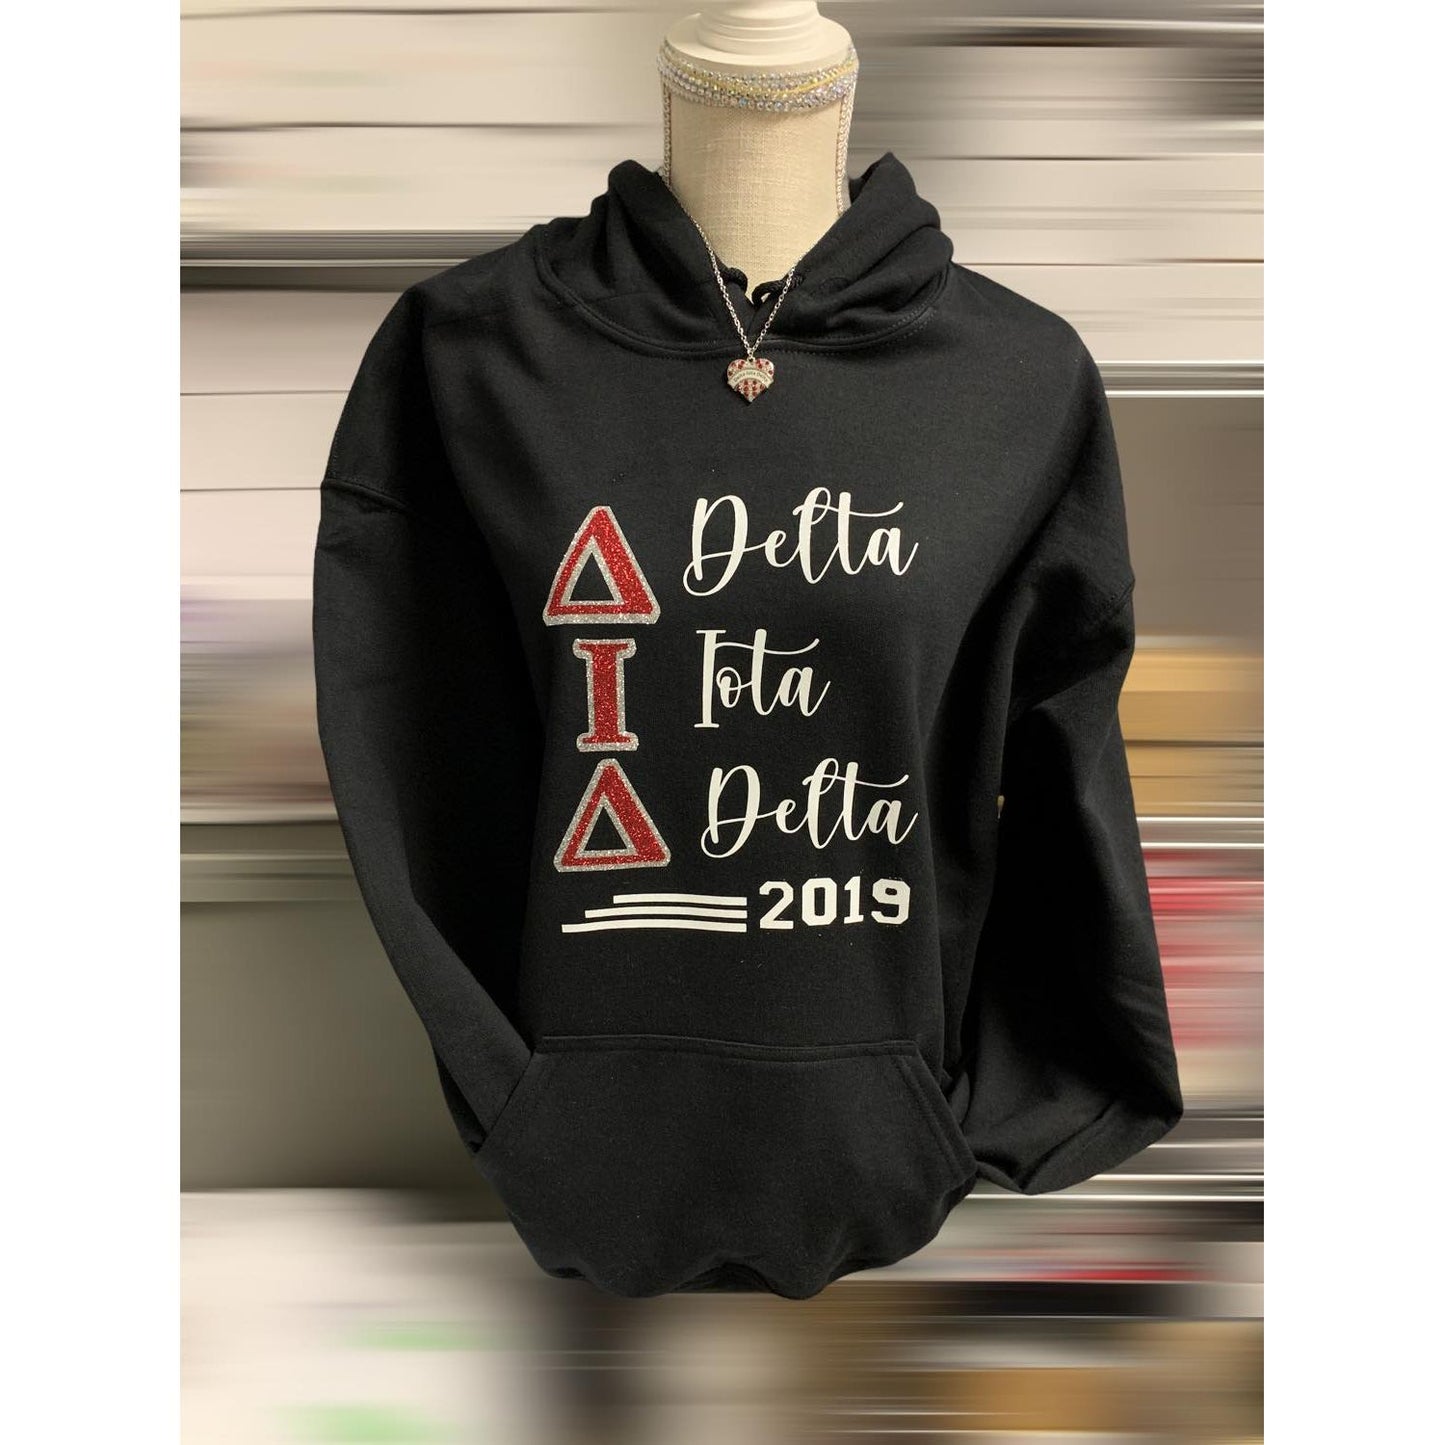 Delta Iota Delta 2019 Hoodie